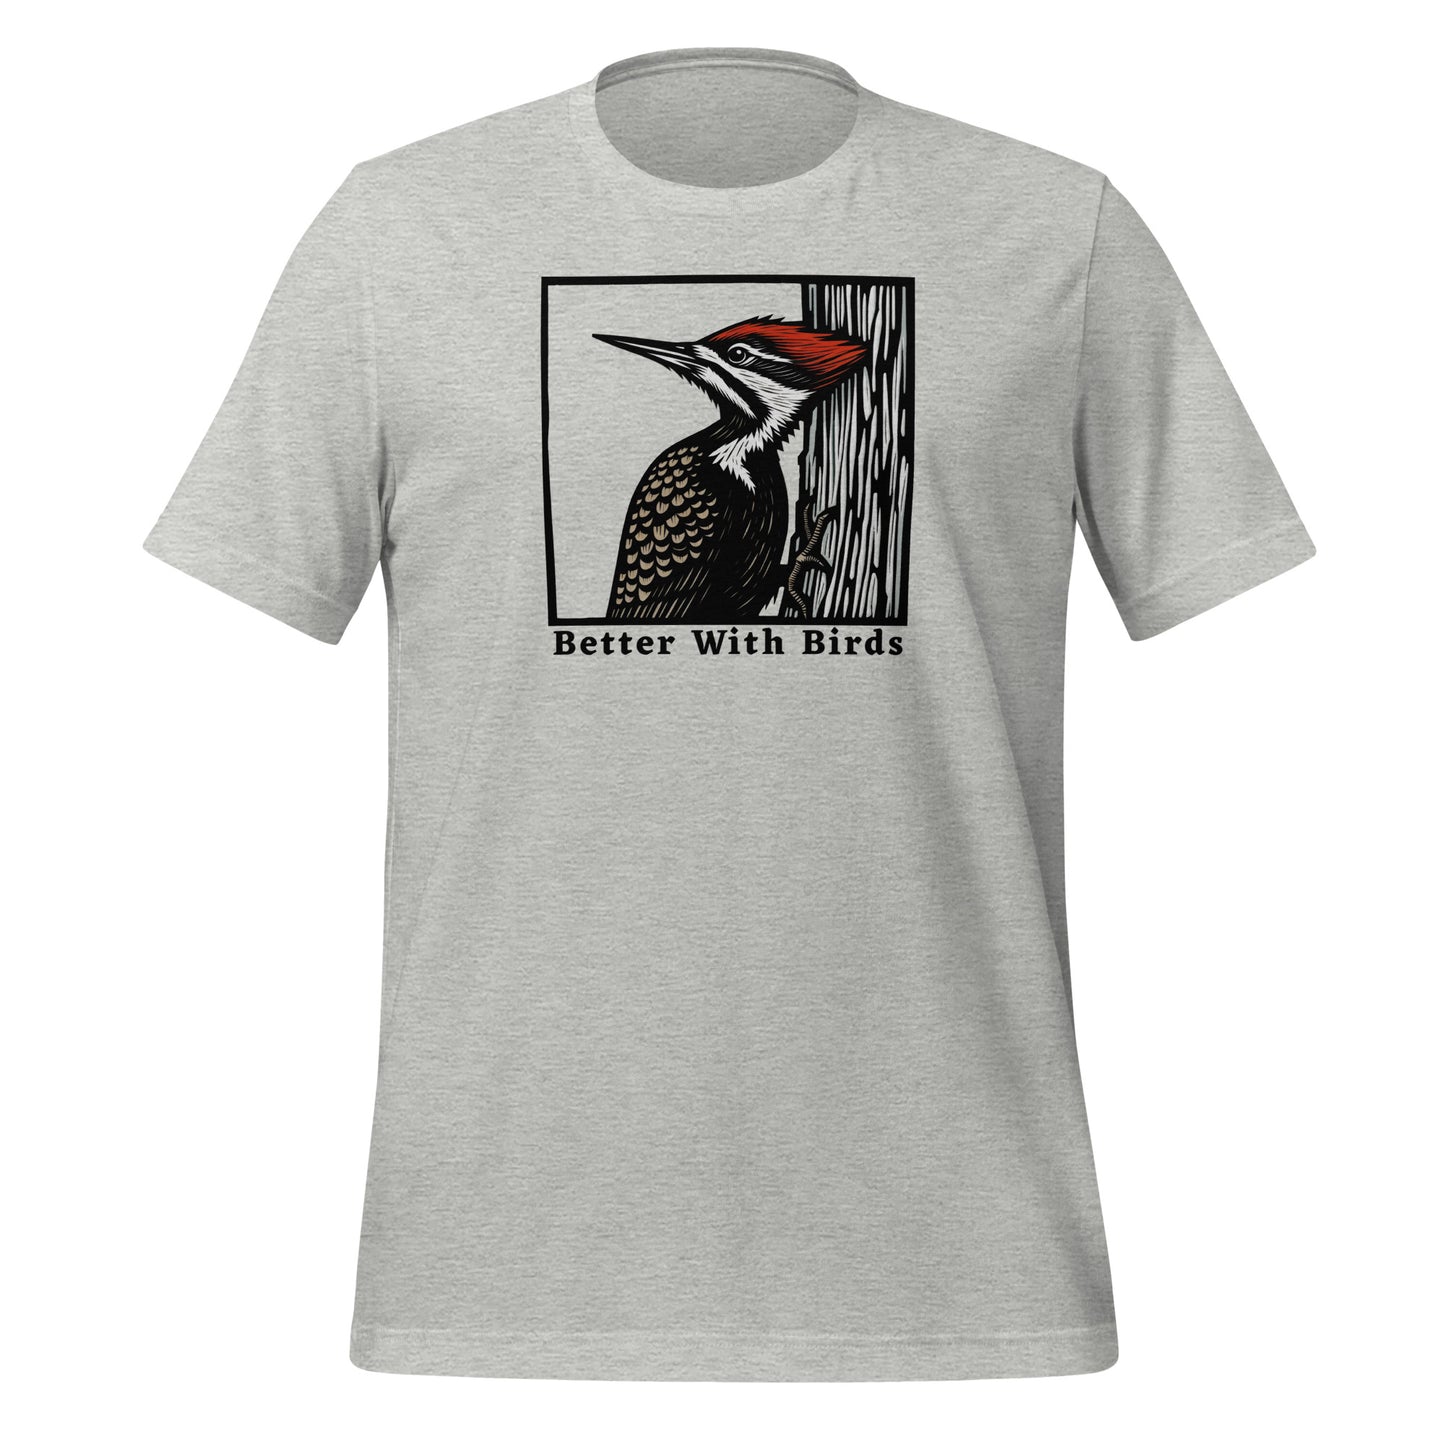 Pileated Woodpecker Lightweight Cotton Unisex T-Shirt